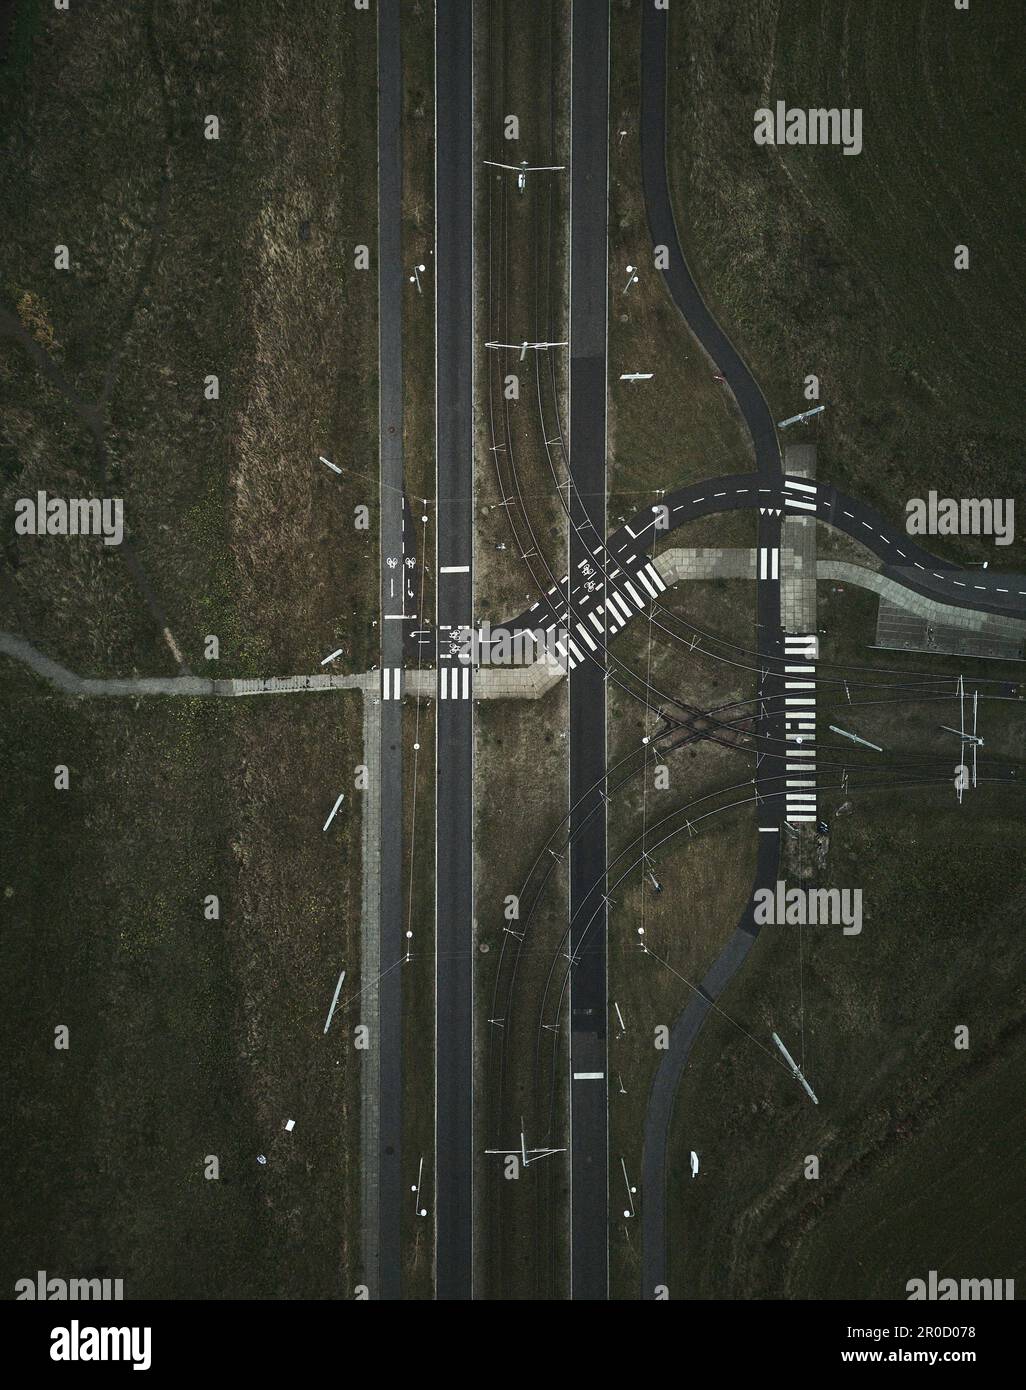 Dieses Luftfoto zeigt einen malerischen Blick auf ein grasbewachsenes Feld mit unberührten Straßen, die unberührt und leer zu sein scheinen Stockfoto